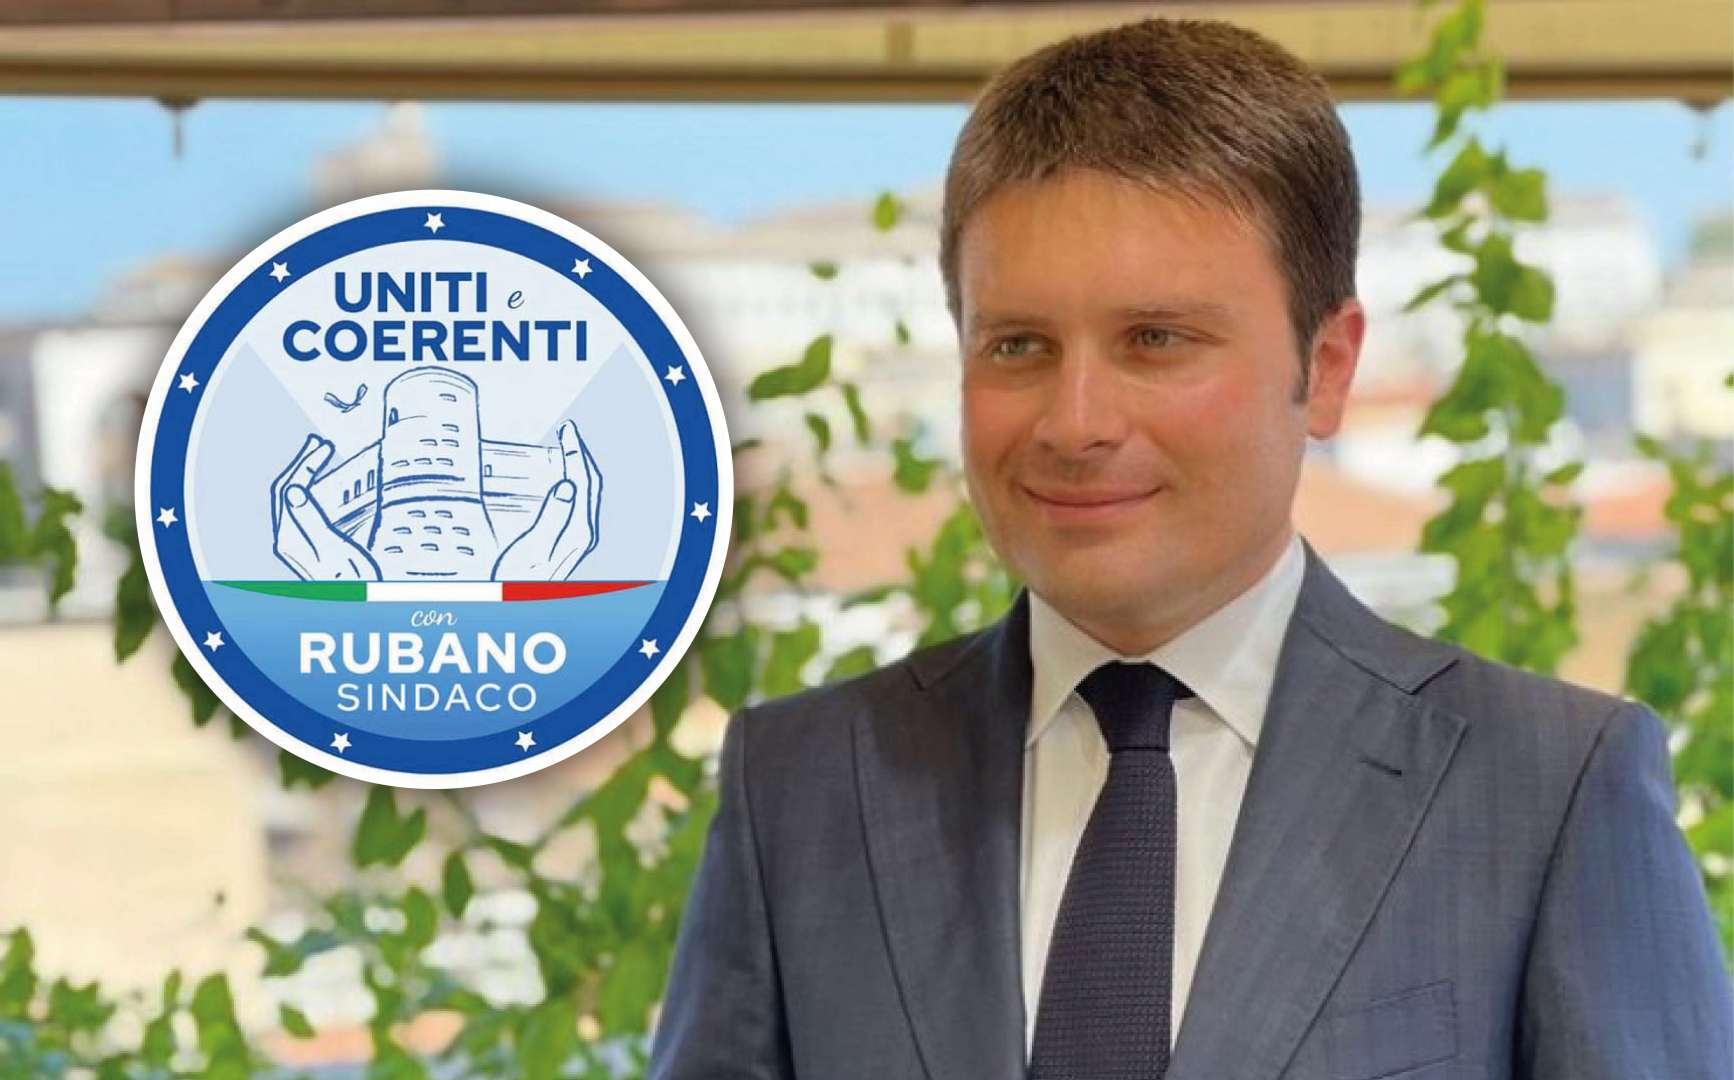 Elezioni Puglianello, Rubano prova il bis con la lista “Uniti e Coerenti”